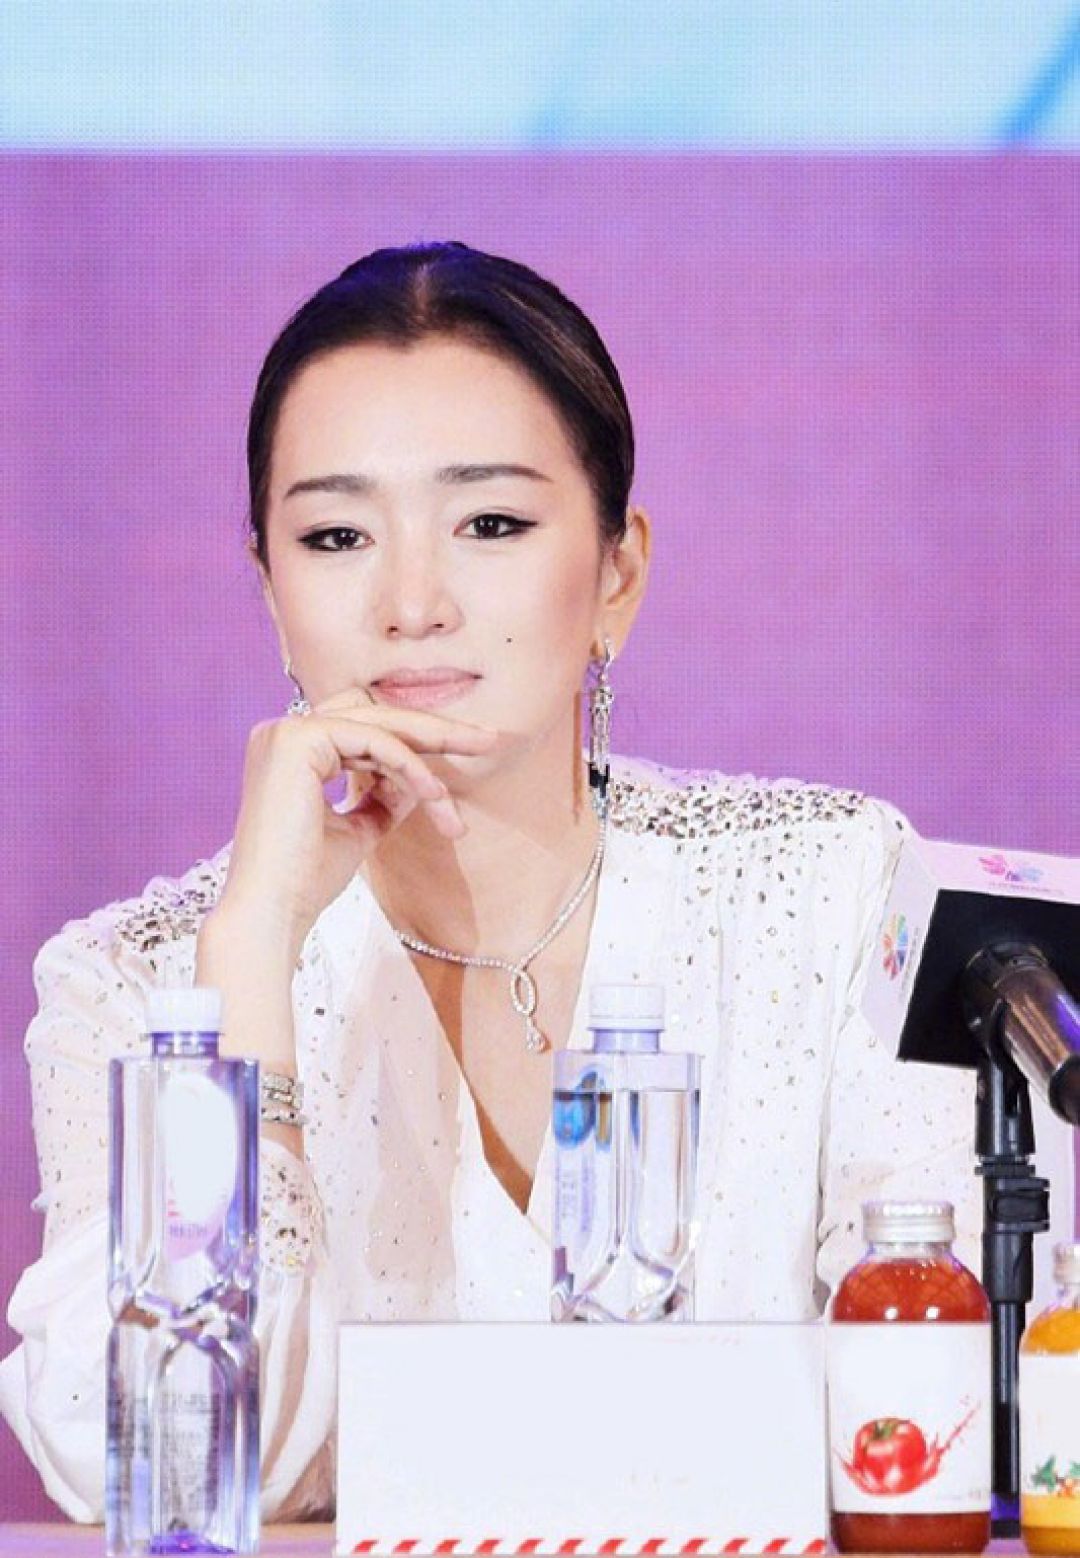 Belajar Menggunakan Setelah Hitam-Putih dari Aktris Gong Li-Image-6